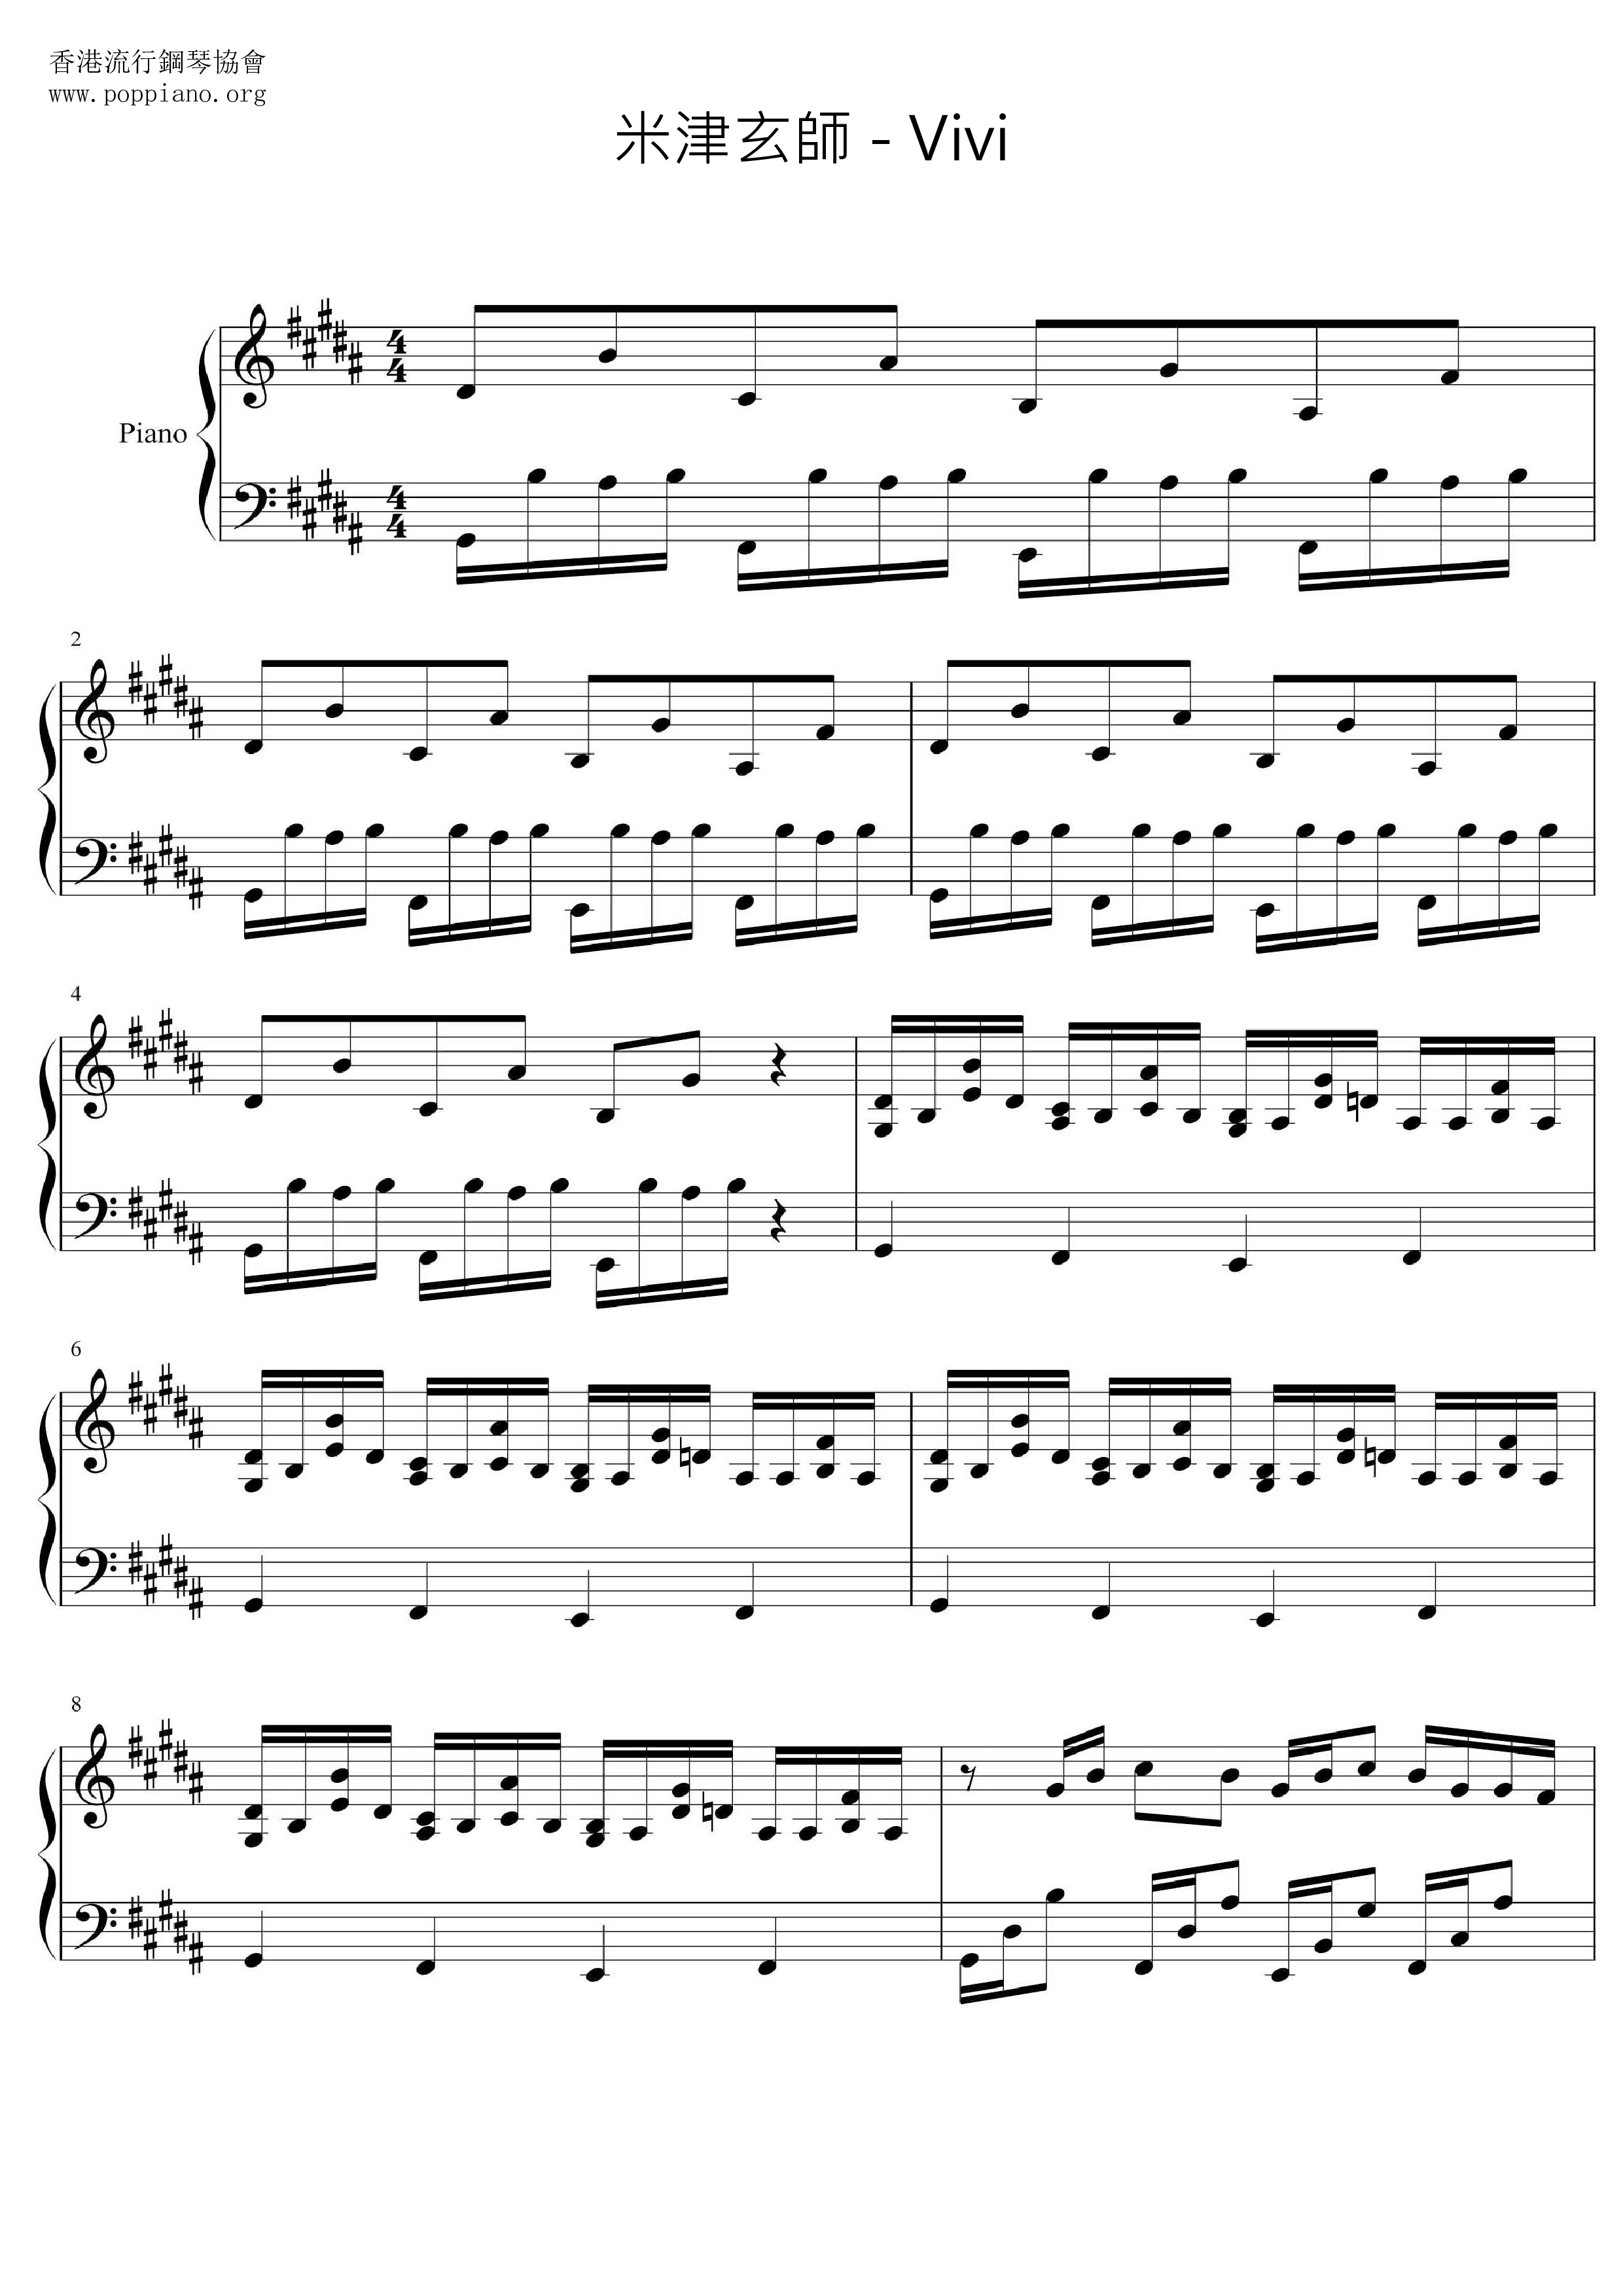 Vivi琴譜